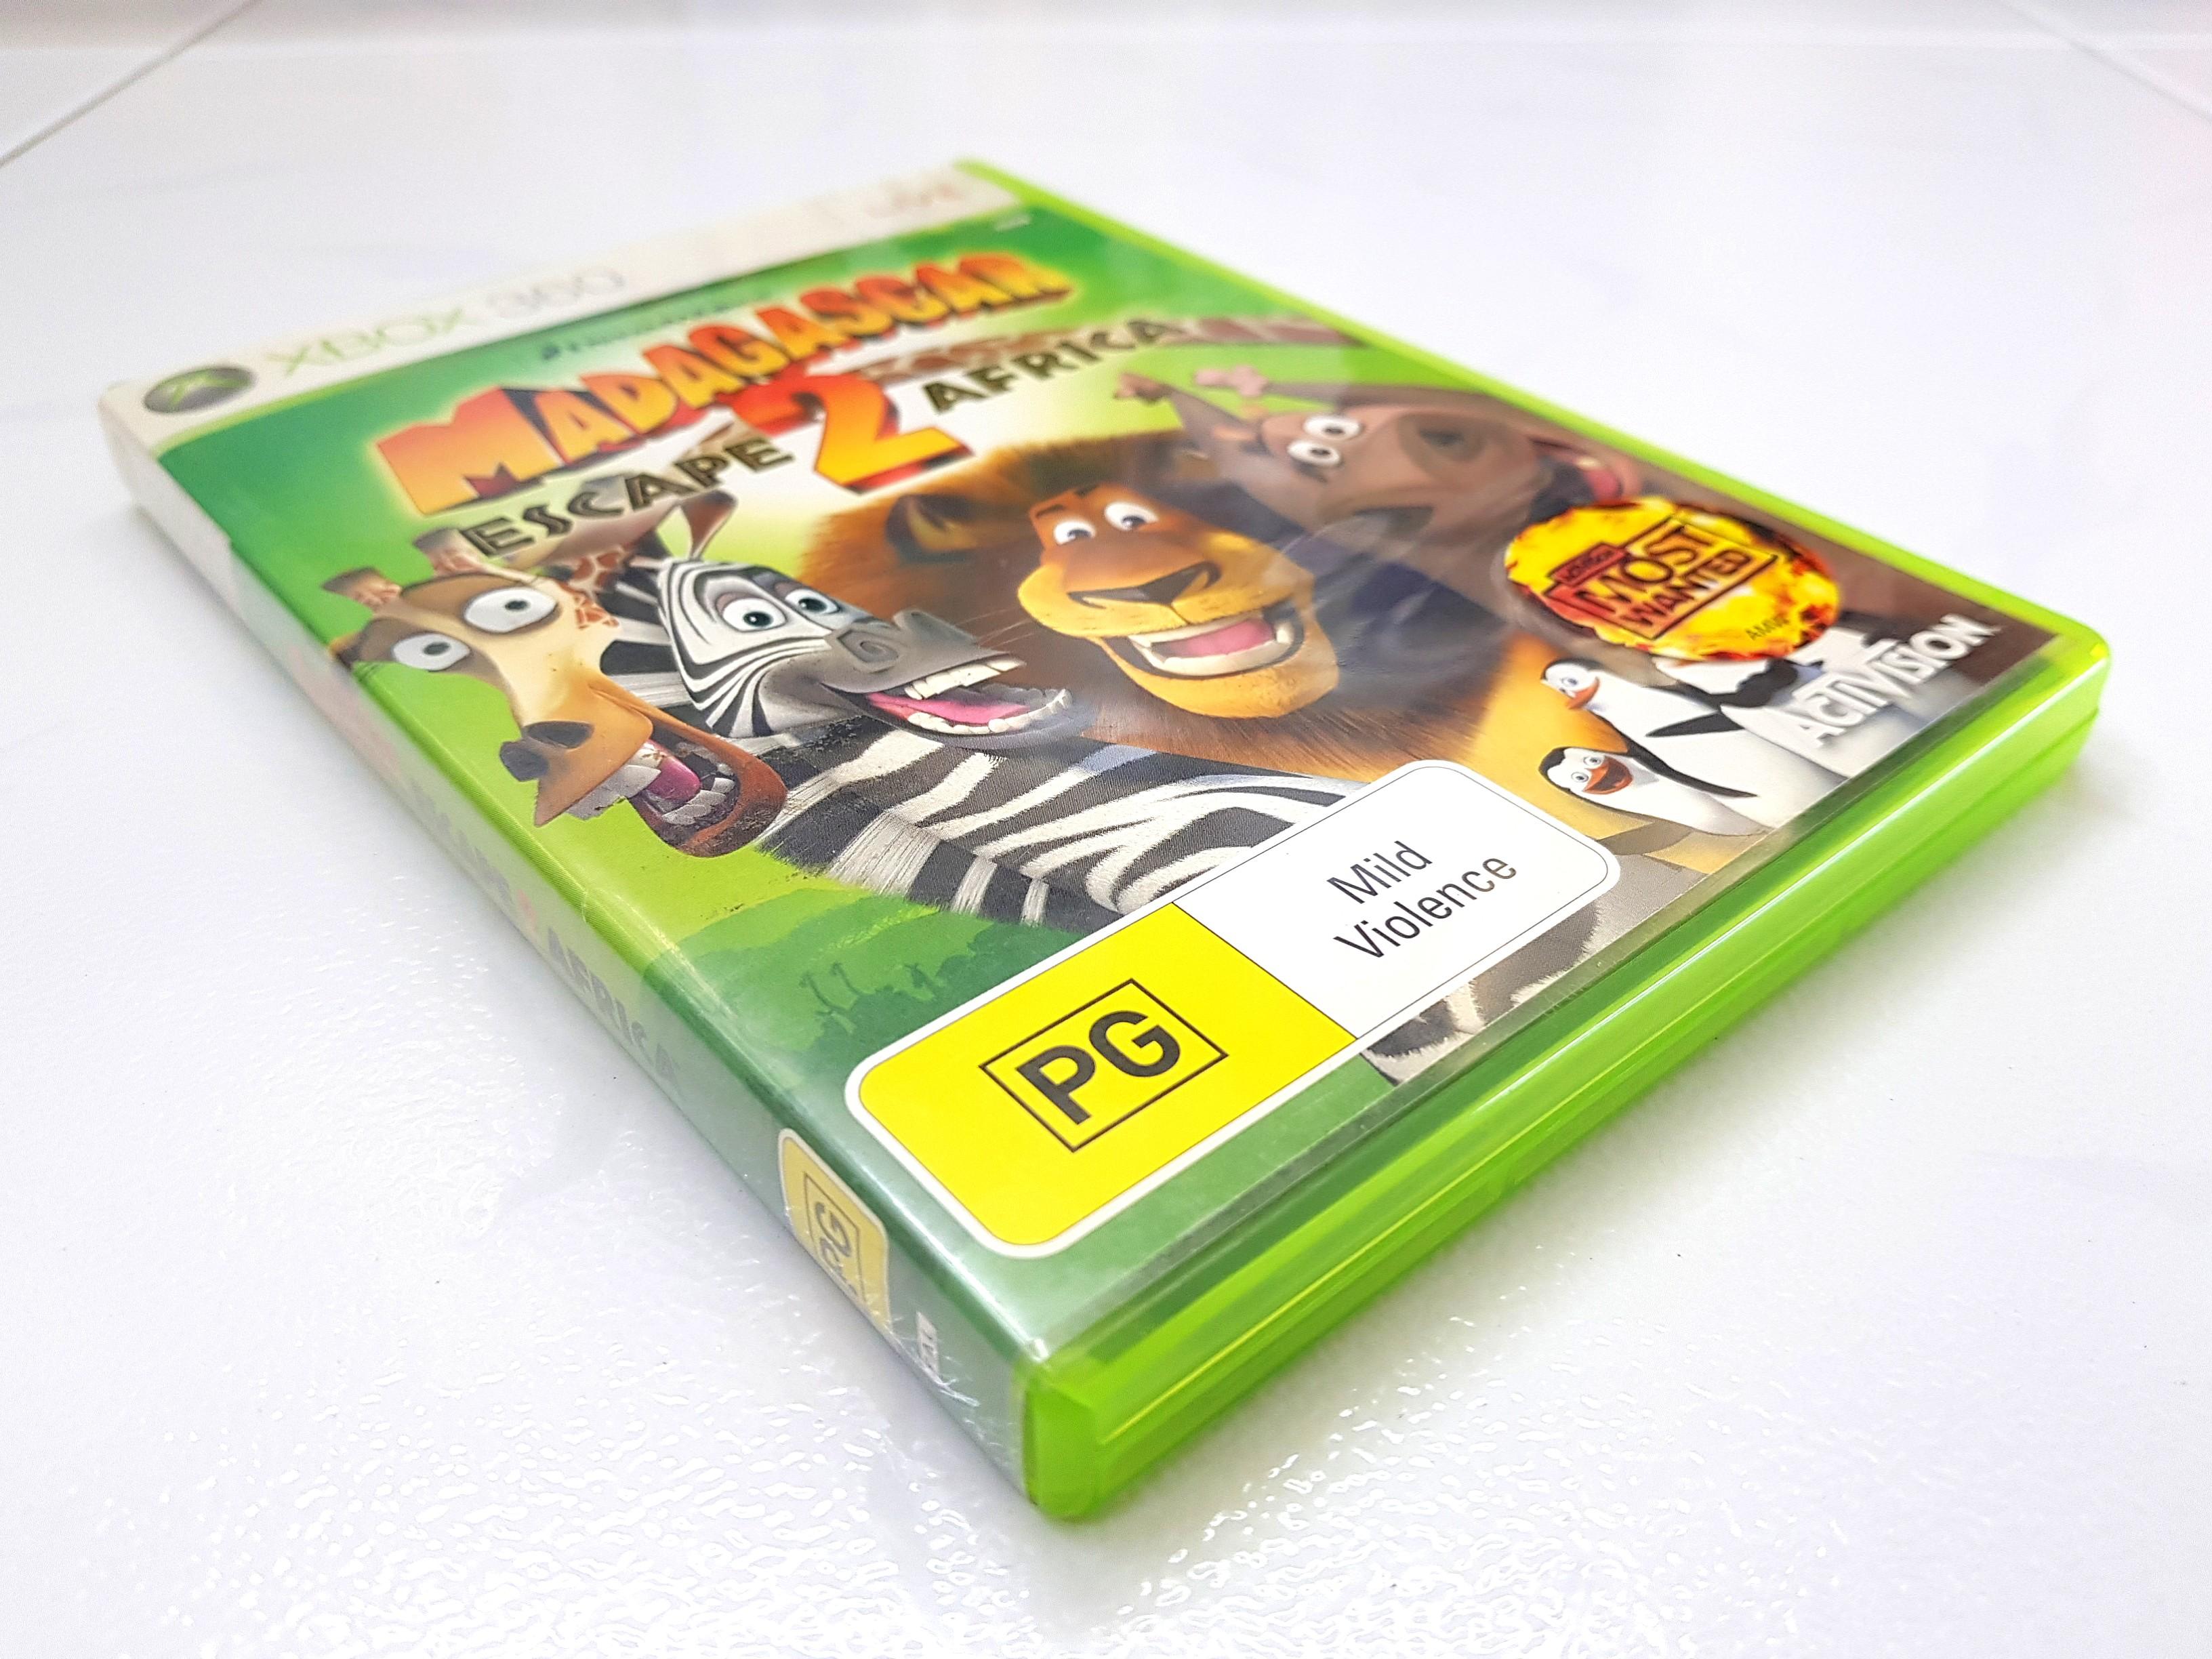 Madagascar 2 [REPRO-PACTH] - Xbox 360 - Sebo dos Games - 10 anos!